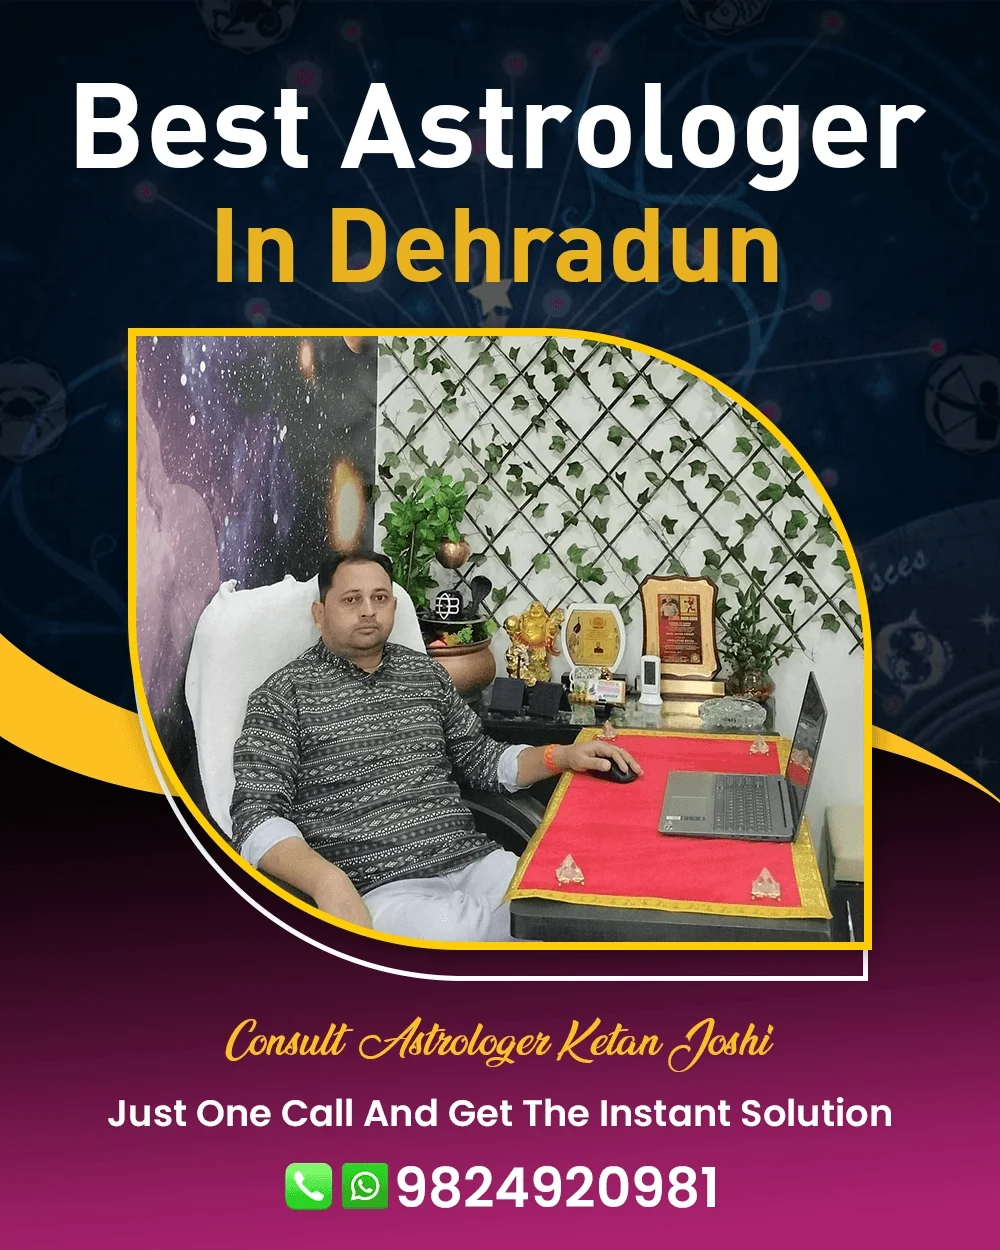 Best Astrologer In Dehradun